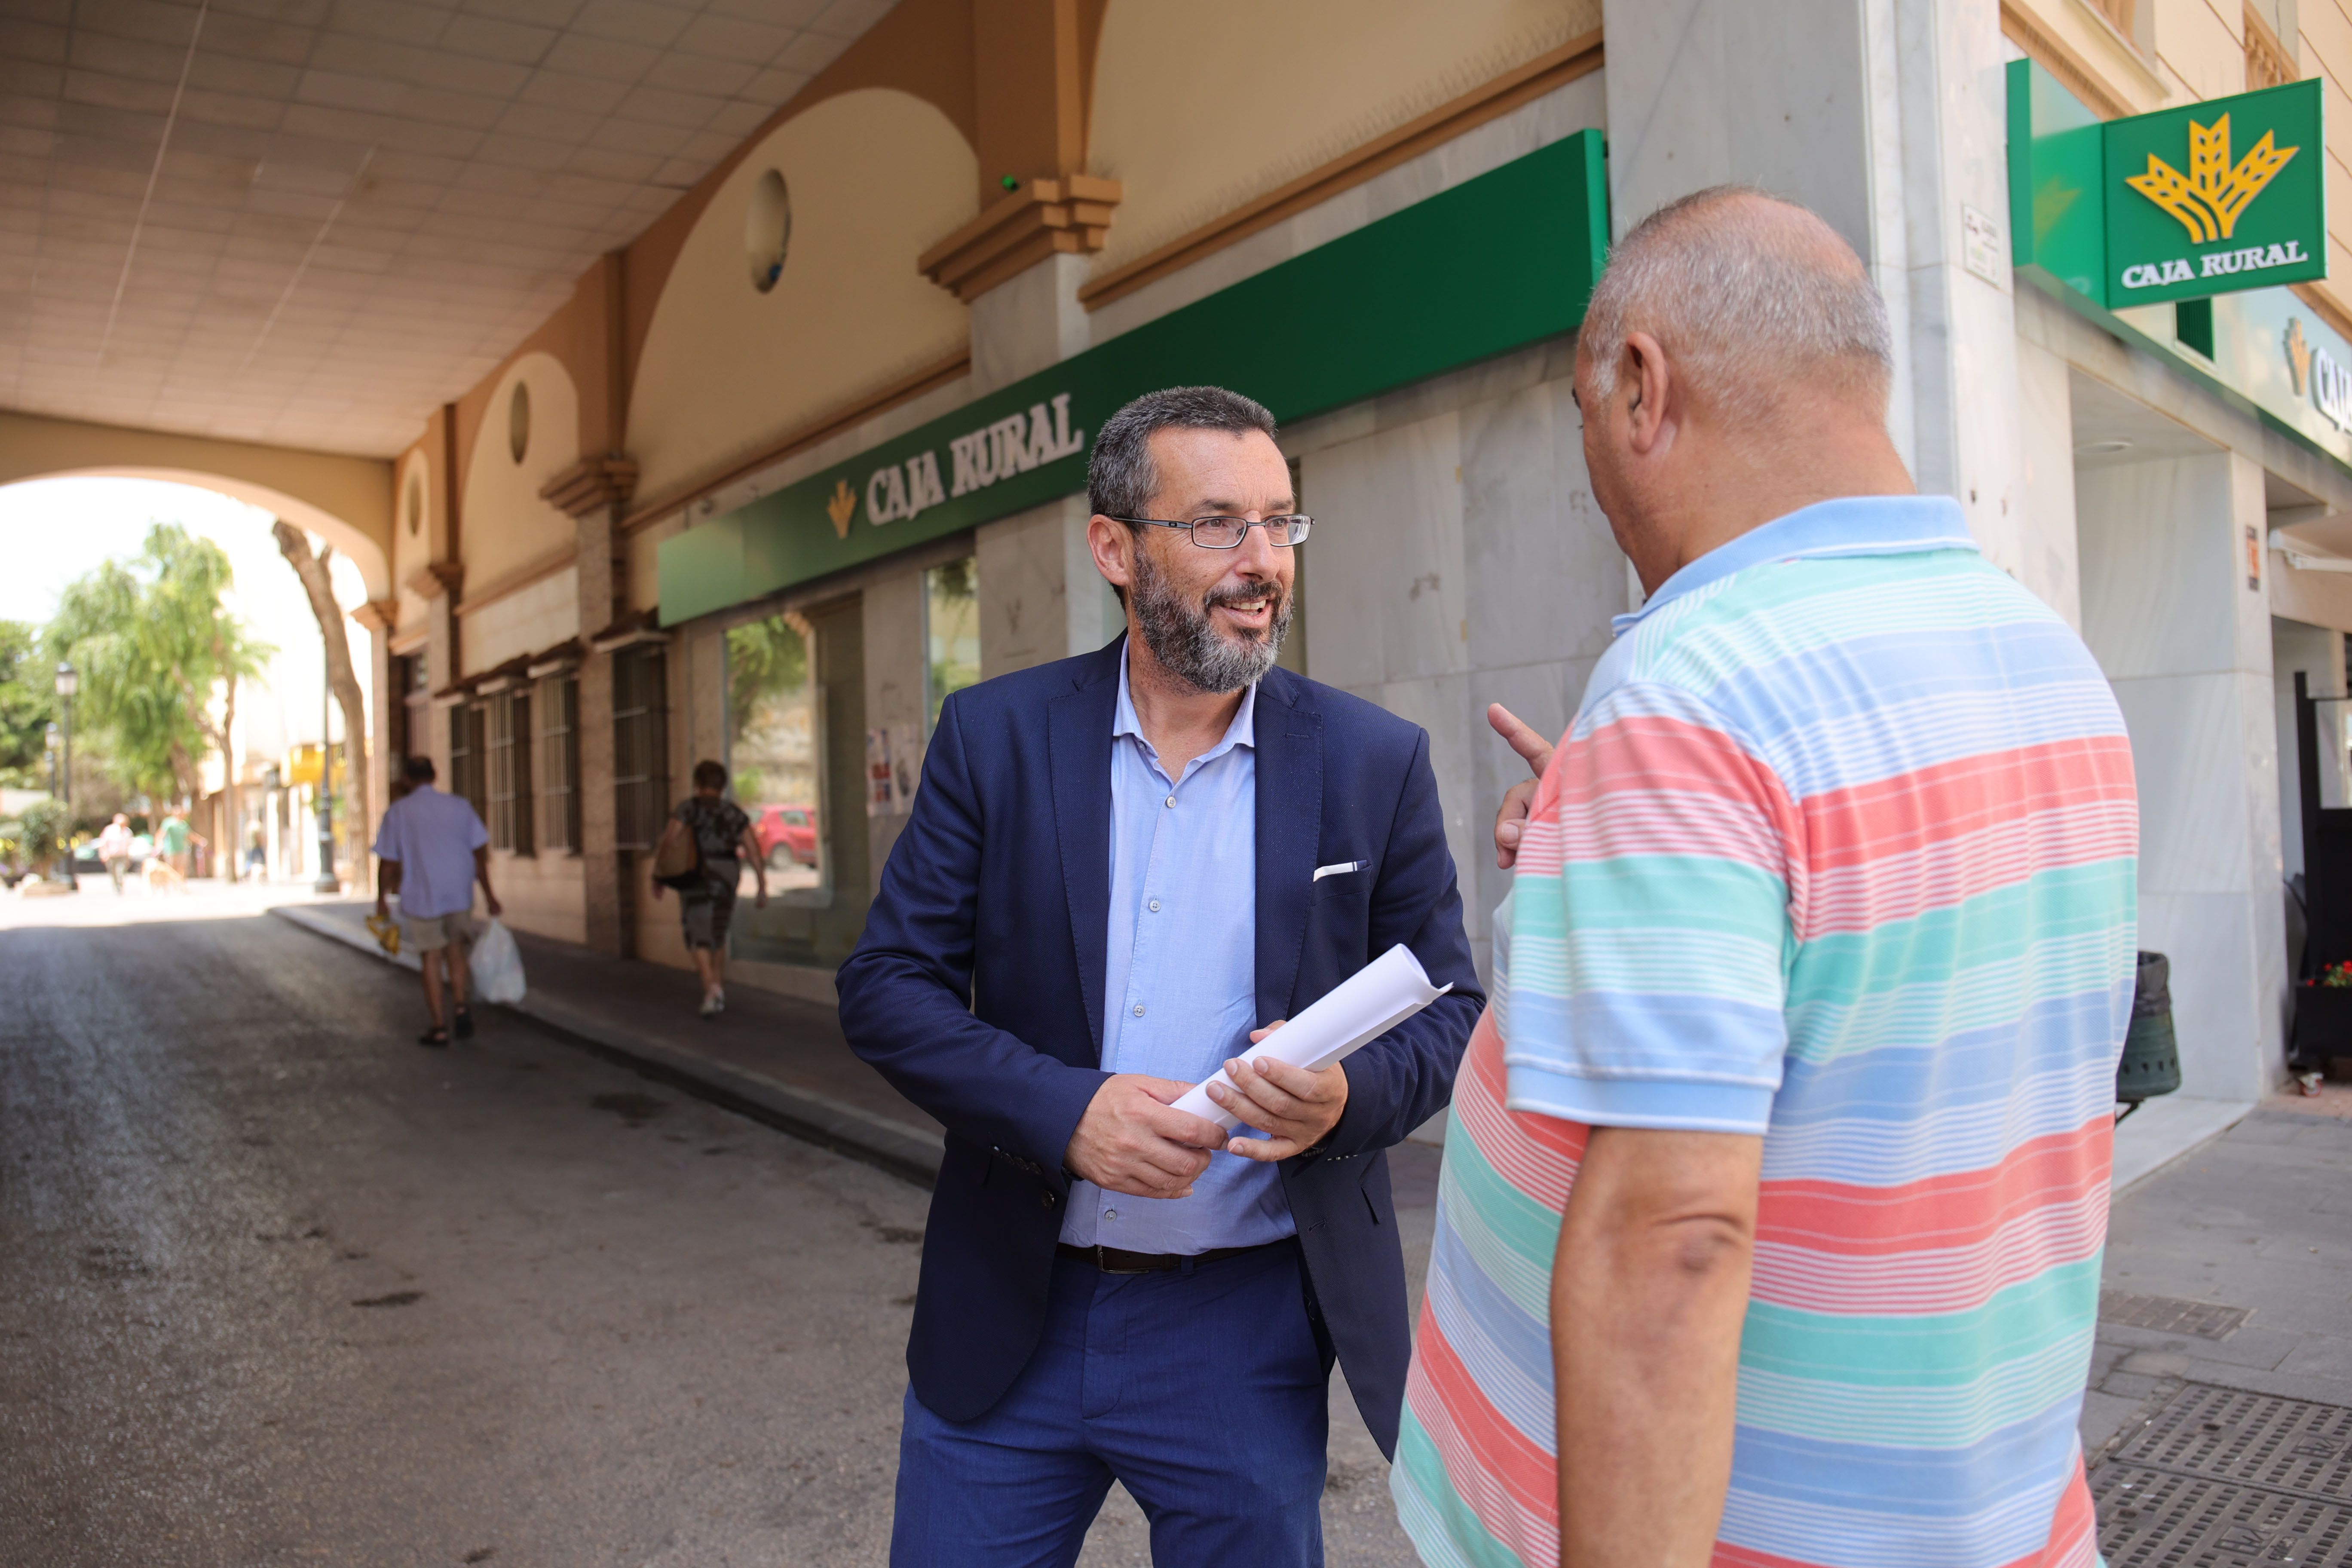 Franco, con el mayor respaldo electoral porcentual en España, habla con un vecino.